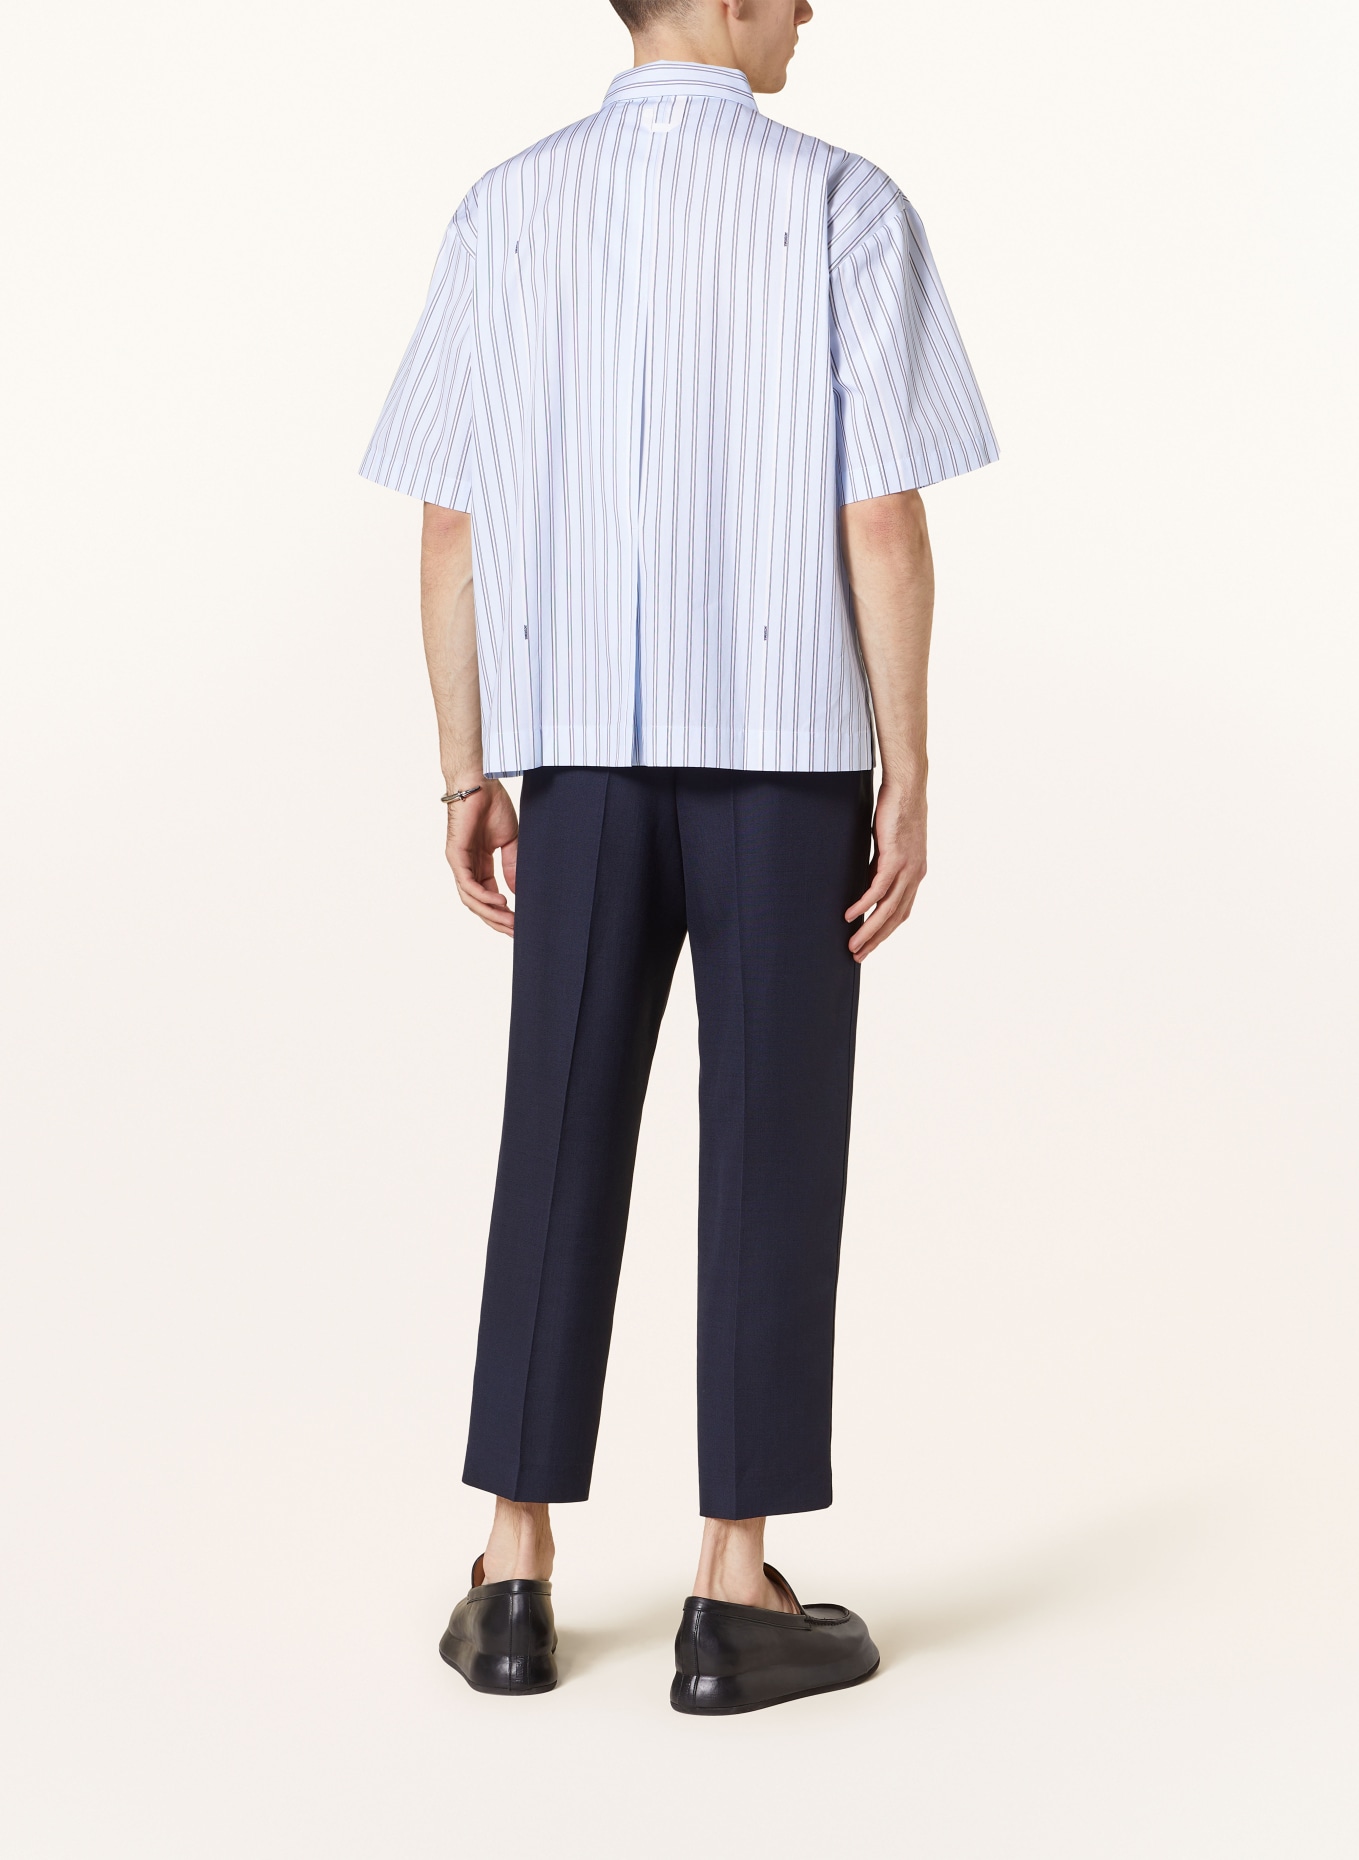 JACQUEMUS Short sleeve shirt LA CHEMISE MANCHE COURTE comfort fit, Color: LIGHT BLUE/ WHITE/ BLACK (Image 3)